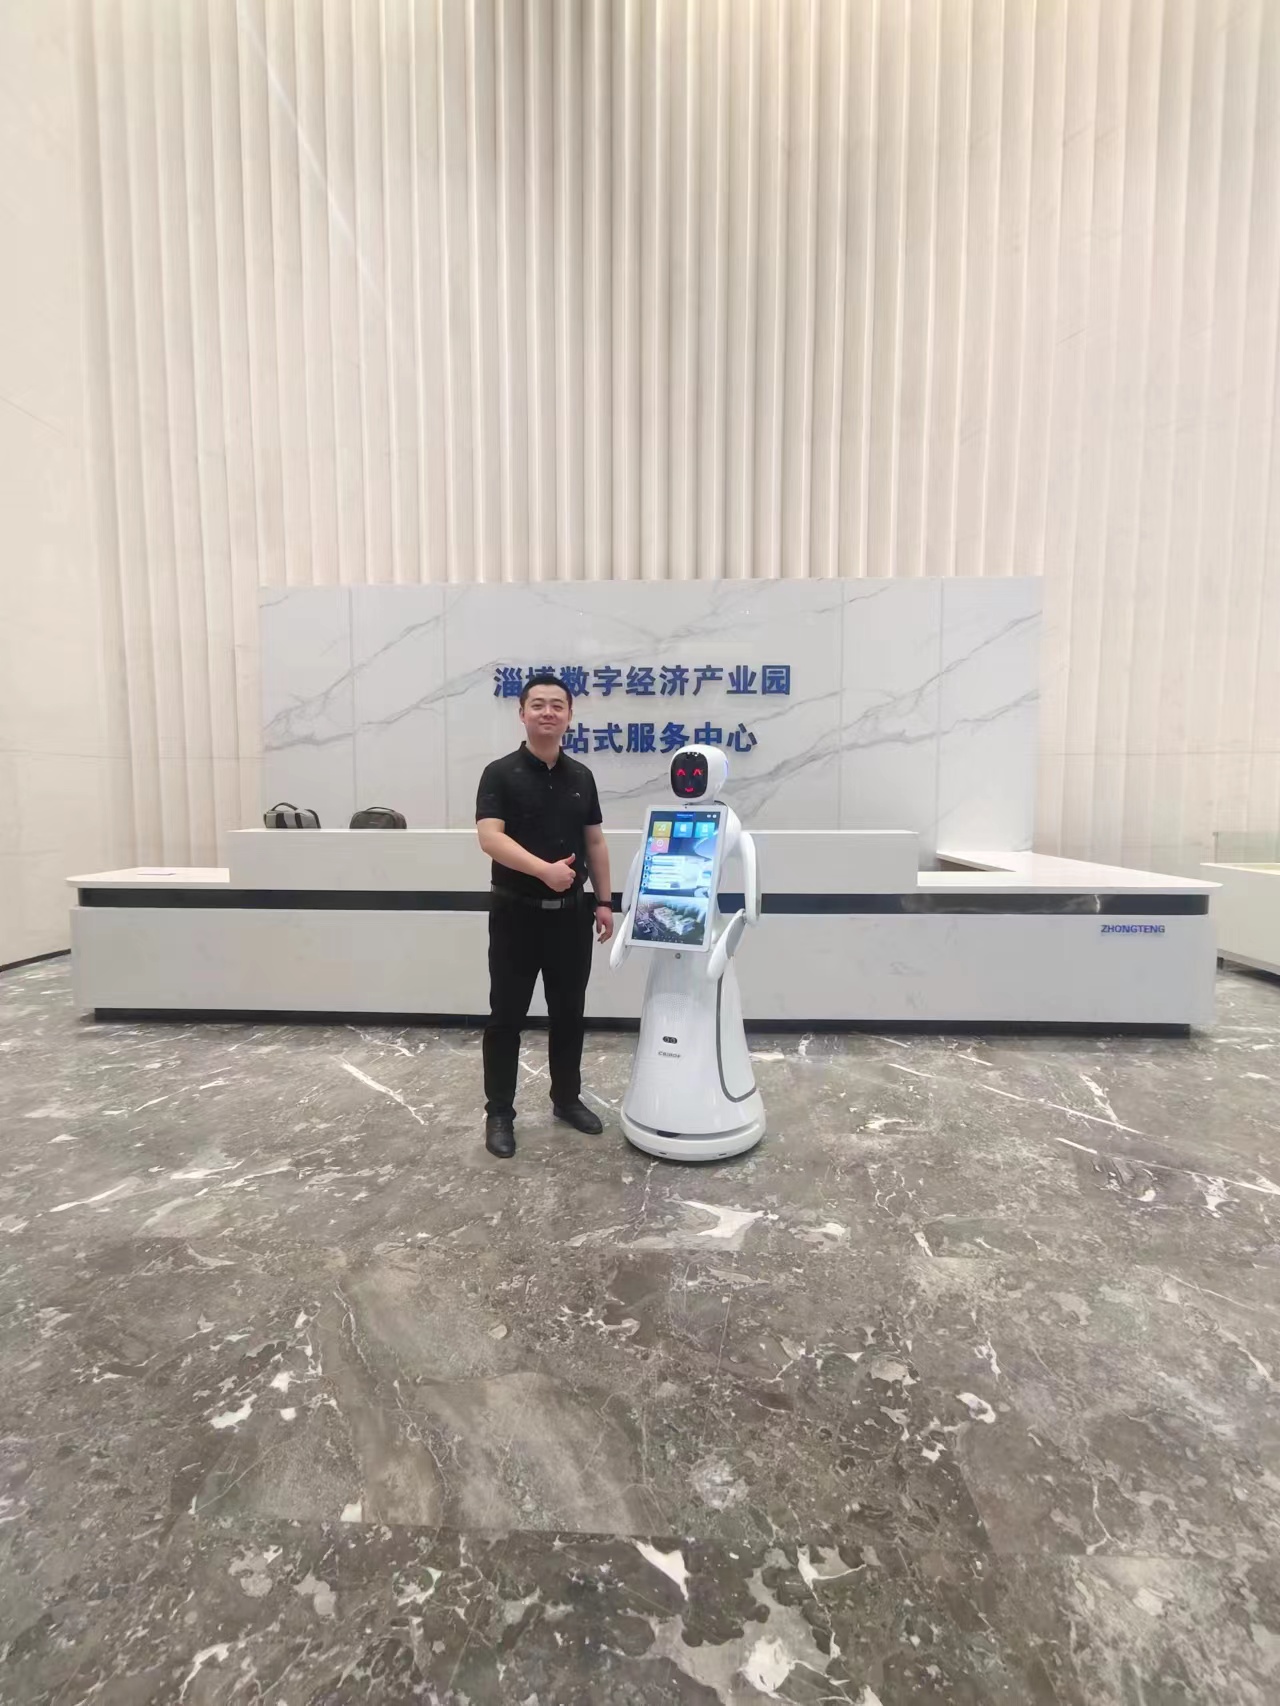 สวนอุตสาหกรรมเศรษฐกิจดิจิทัล Zibo: หุ่นยนต์บริการ Amy AI ผู้นำการเยี่ยมชมประสบการณ์ใหม่อย่างชาญฉลาด